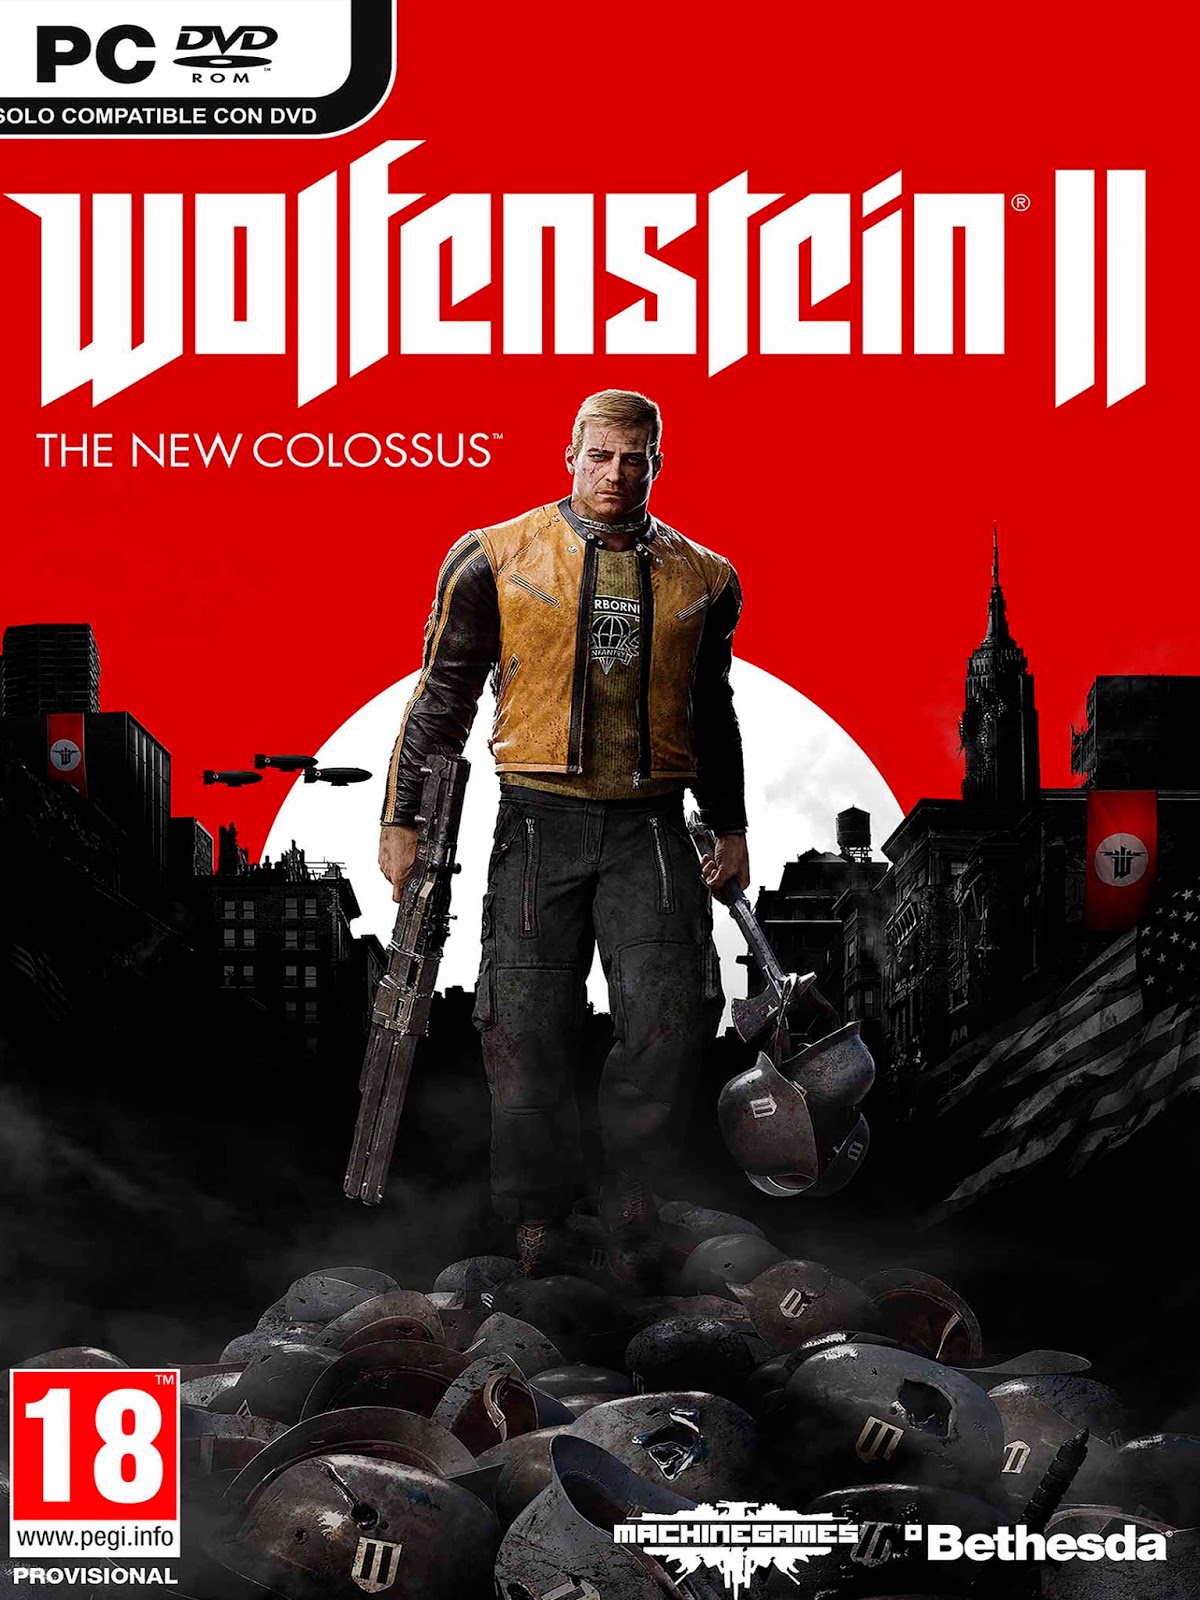 New colossus отзывы. Wolfenstein the New Colossus системные требования. Вольфенштайн 2 системные требования. Wolfenstein II the New Colossus системные требования на ПК. Wolfenstein 2 the Colossus системные требования.